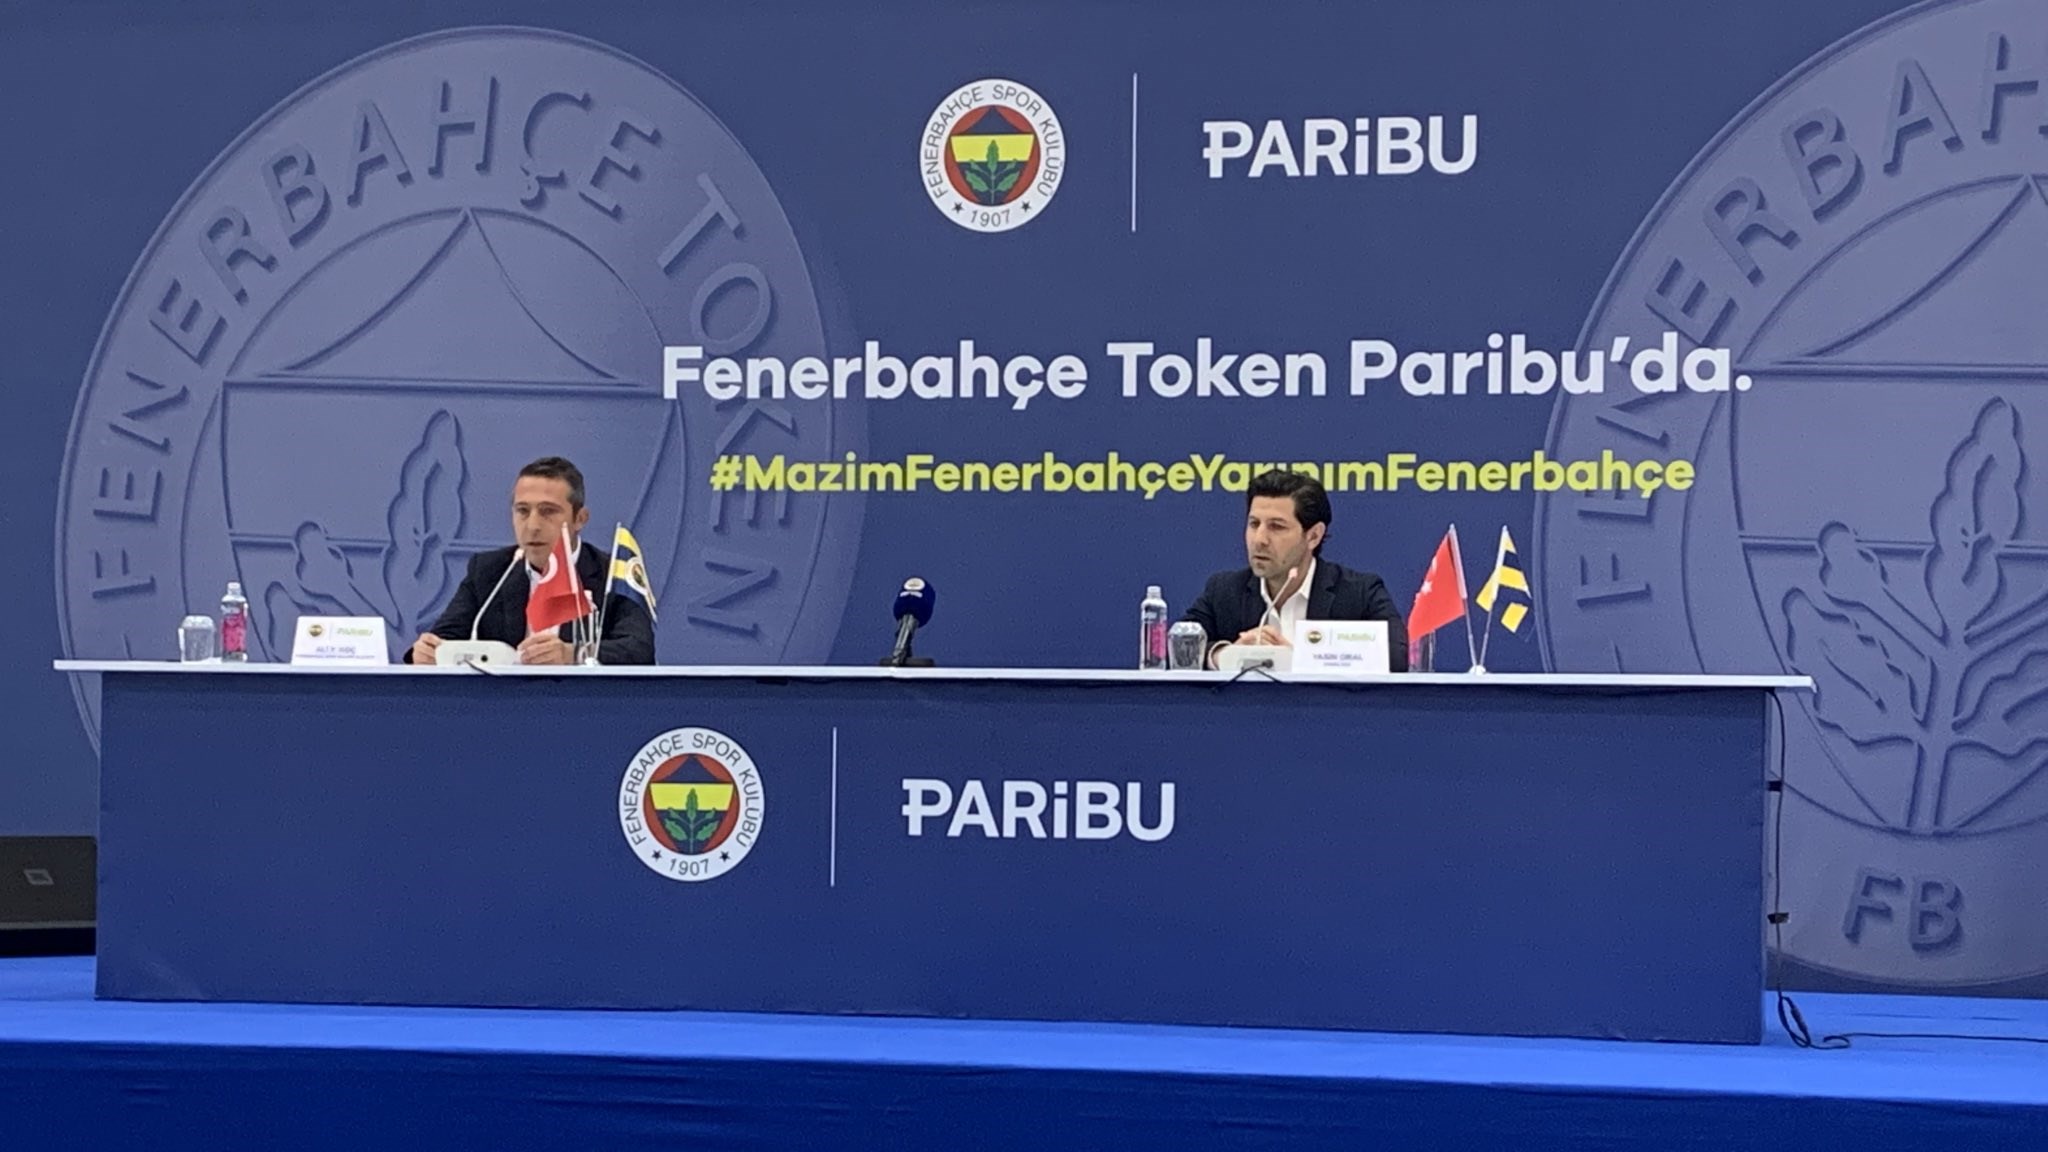 Fenerbahçe Token ön satışından elde edilen gelir açıklandı